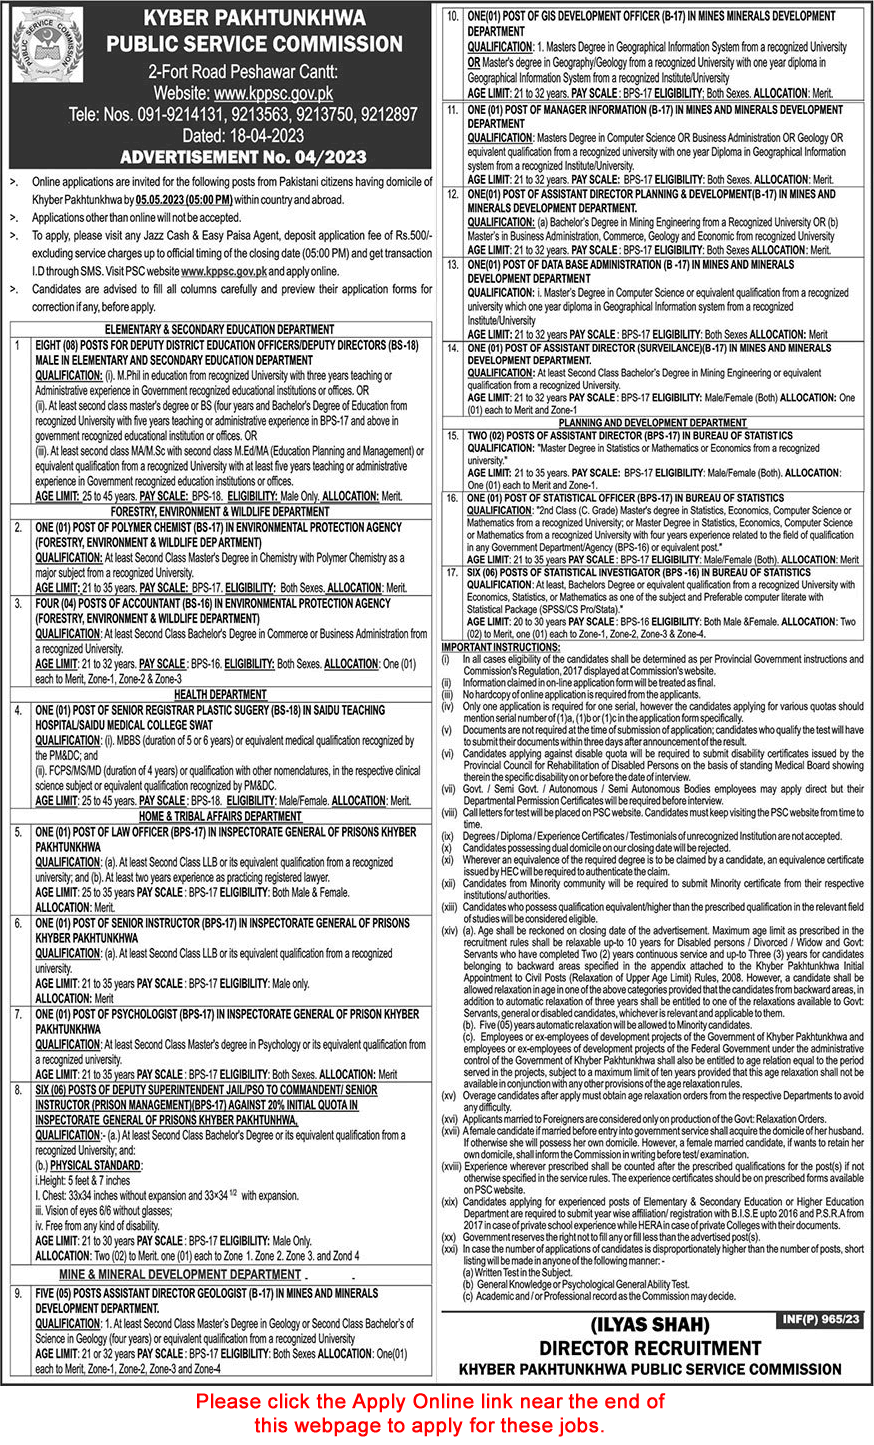 KPK Public Service Commission Jobs April 2023 Apply Online Advertisement No 04/2023 Latest